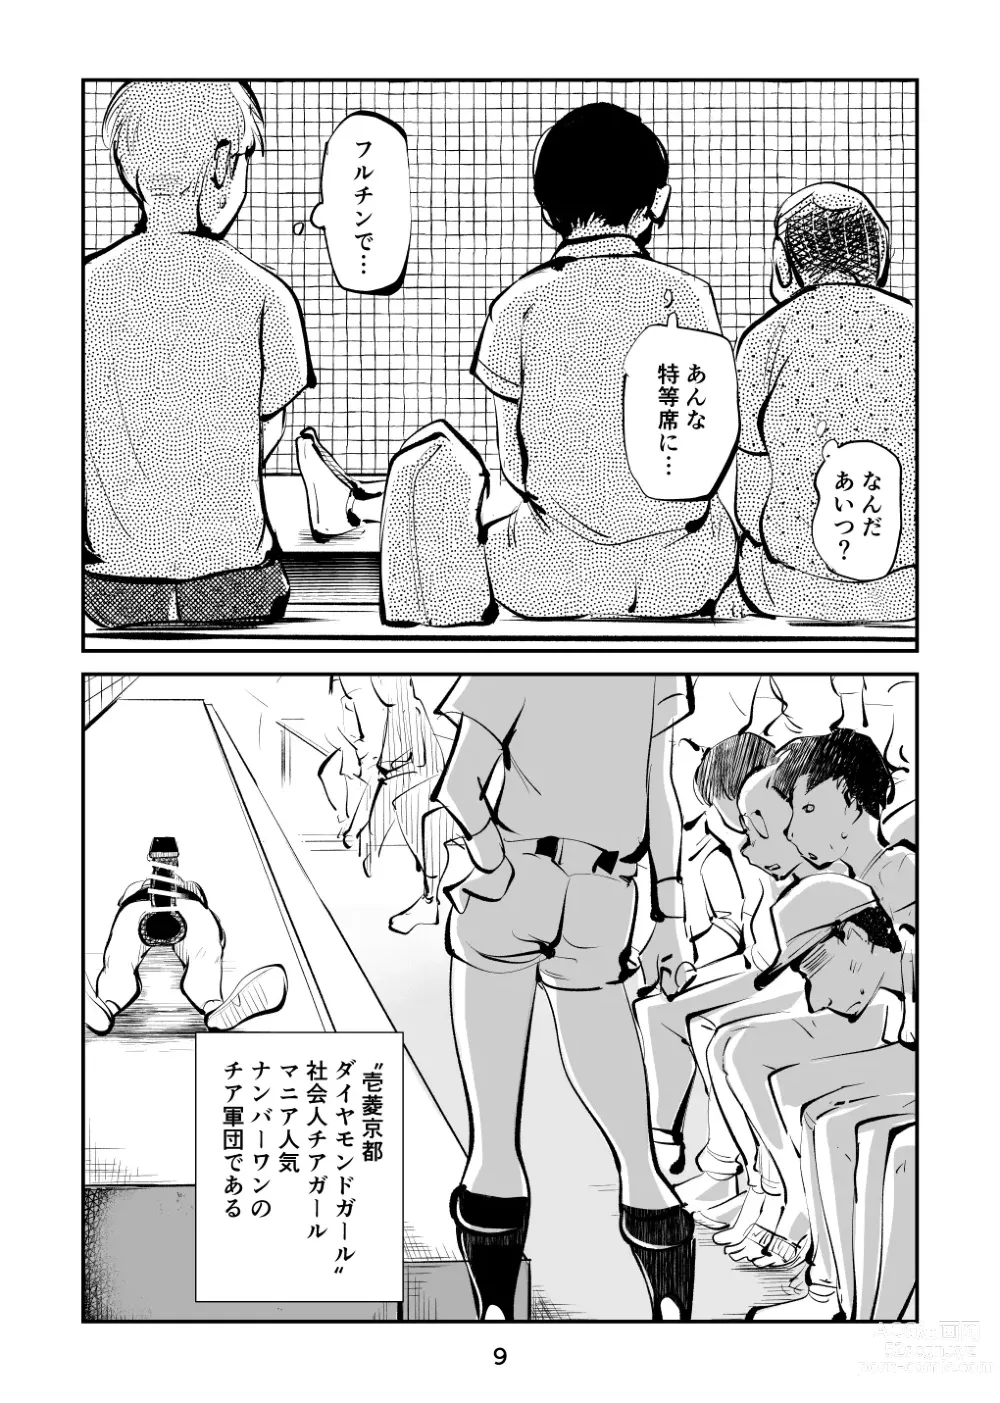 Page 9 of doujinshi Kinkeri Cheer Girl VS Tosatsuma Shakai Hito Cheer Girl-hen